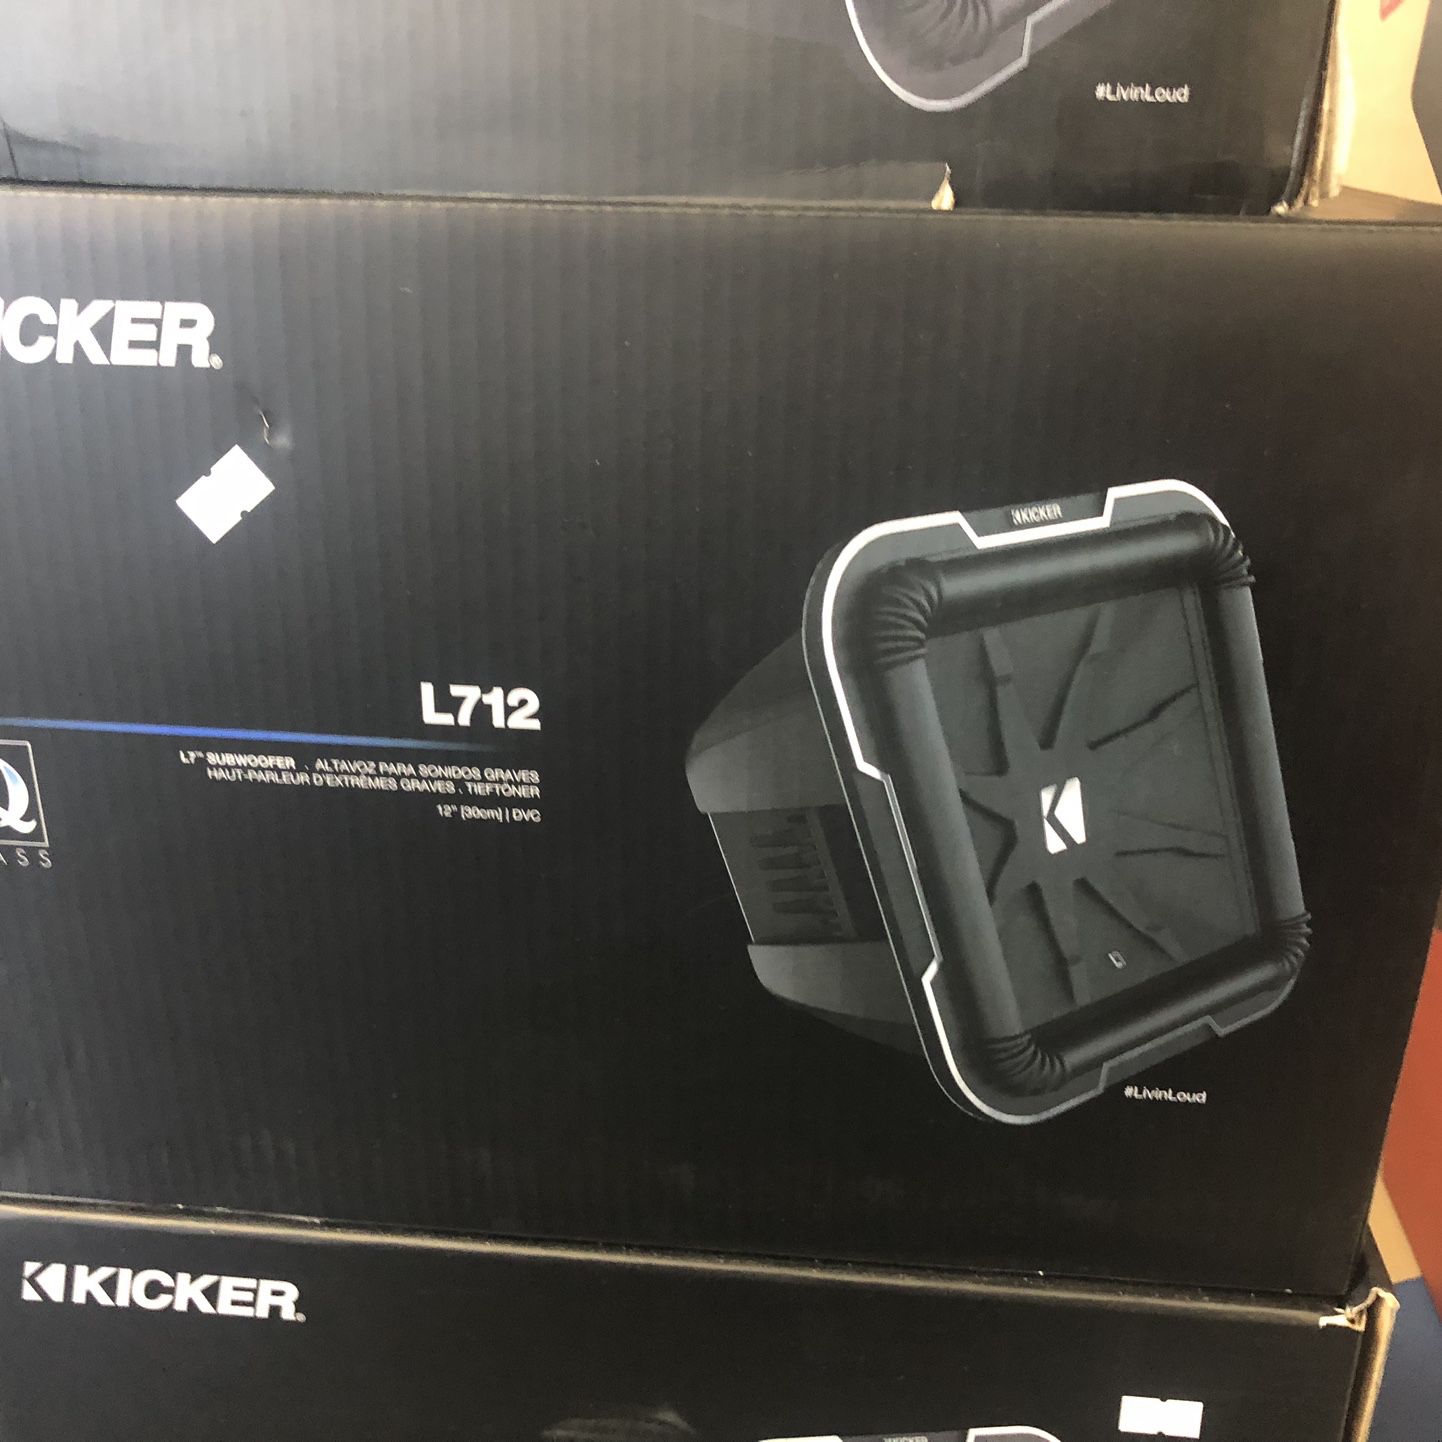 Kicker L7q12 On Sale For 319.99